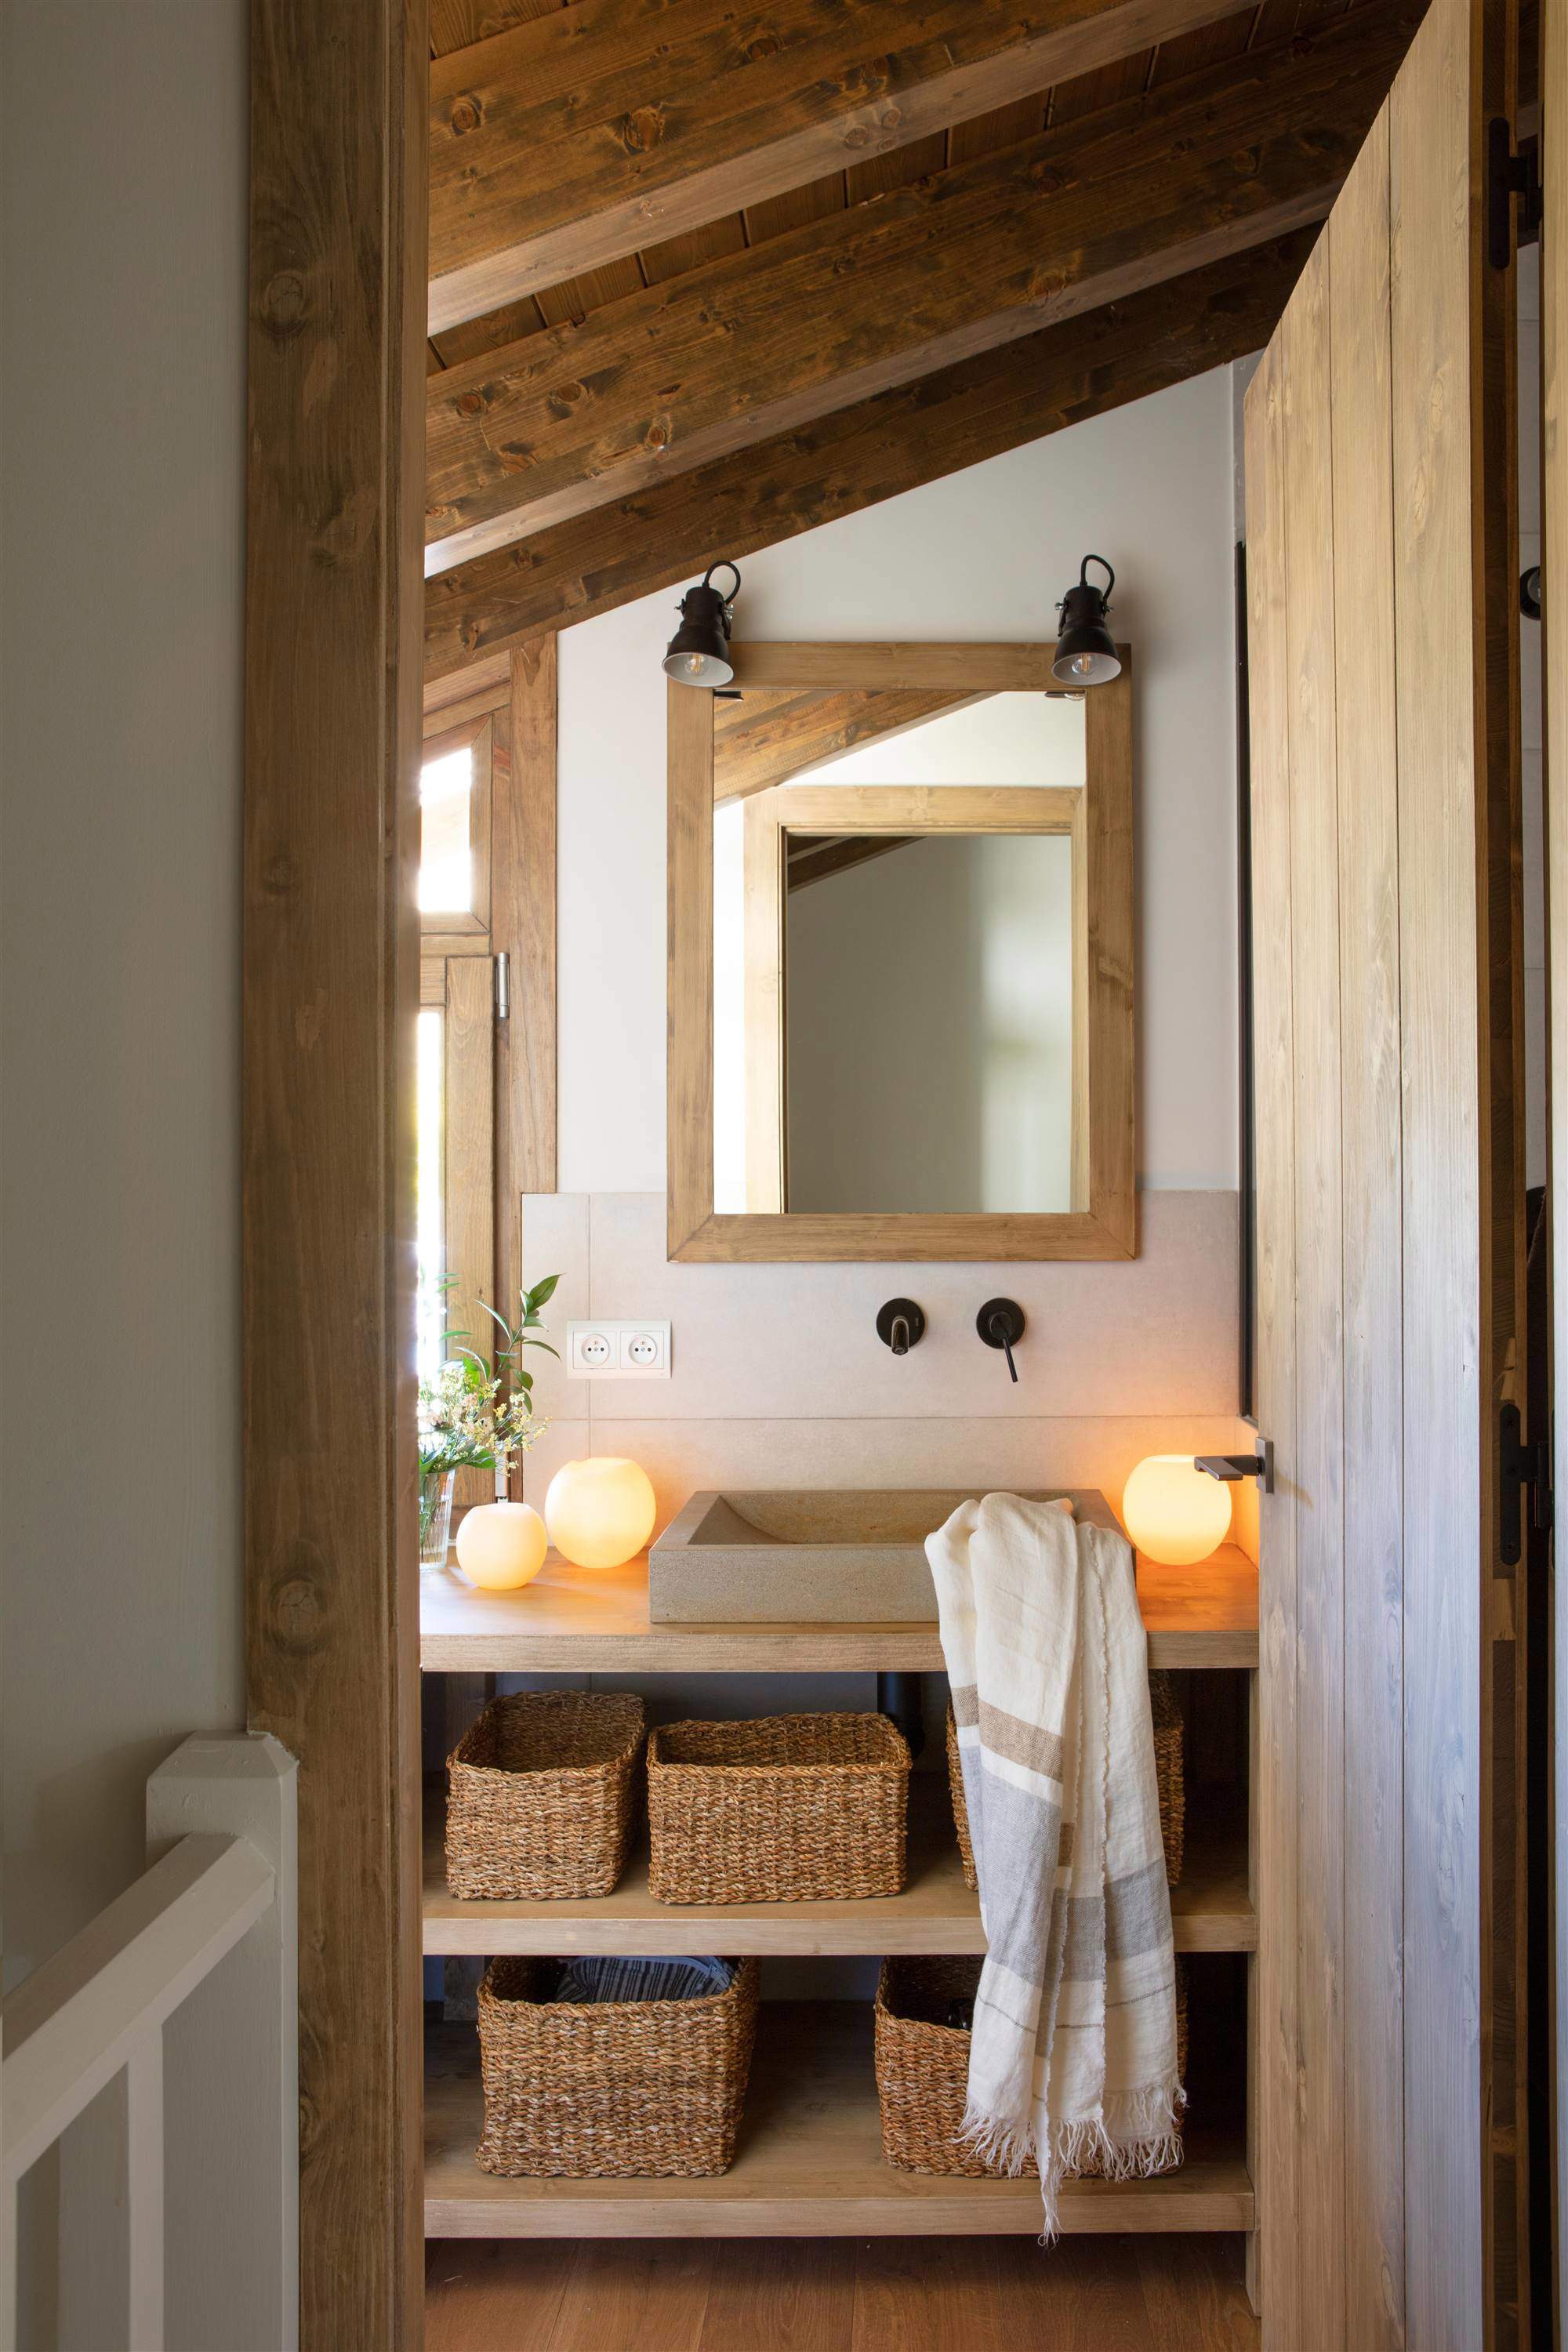 Baño con mueble bajolavabo abierto y de madera, grifería negra, espejo de madera, apliques negros, cestas de fibra y velas redondas.